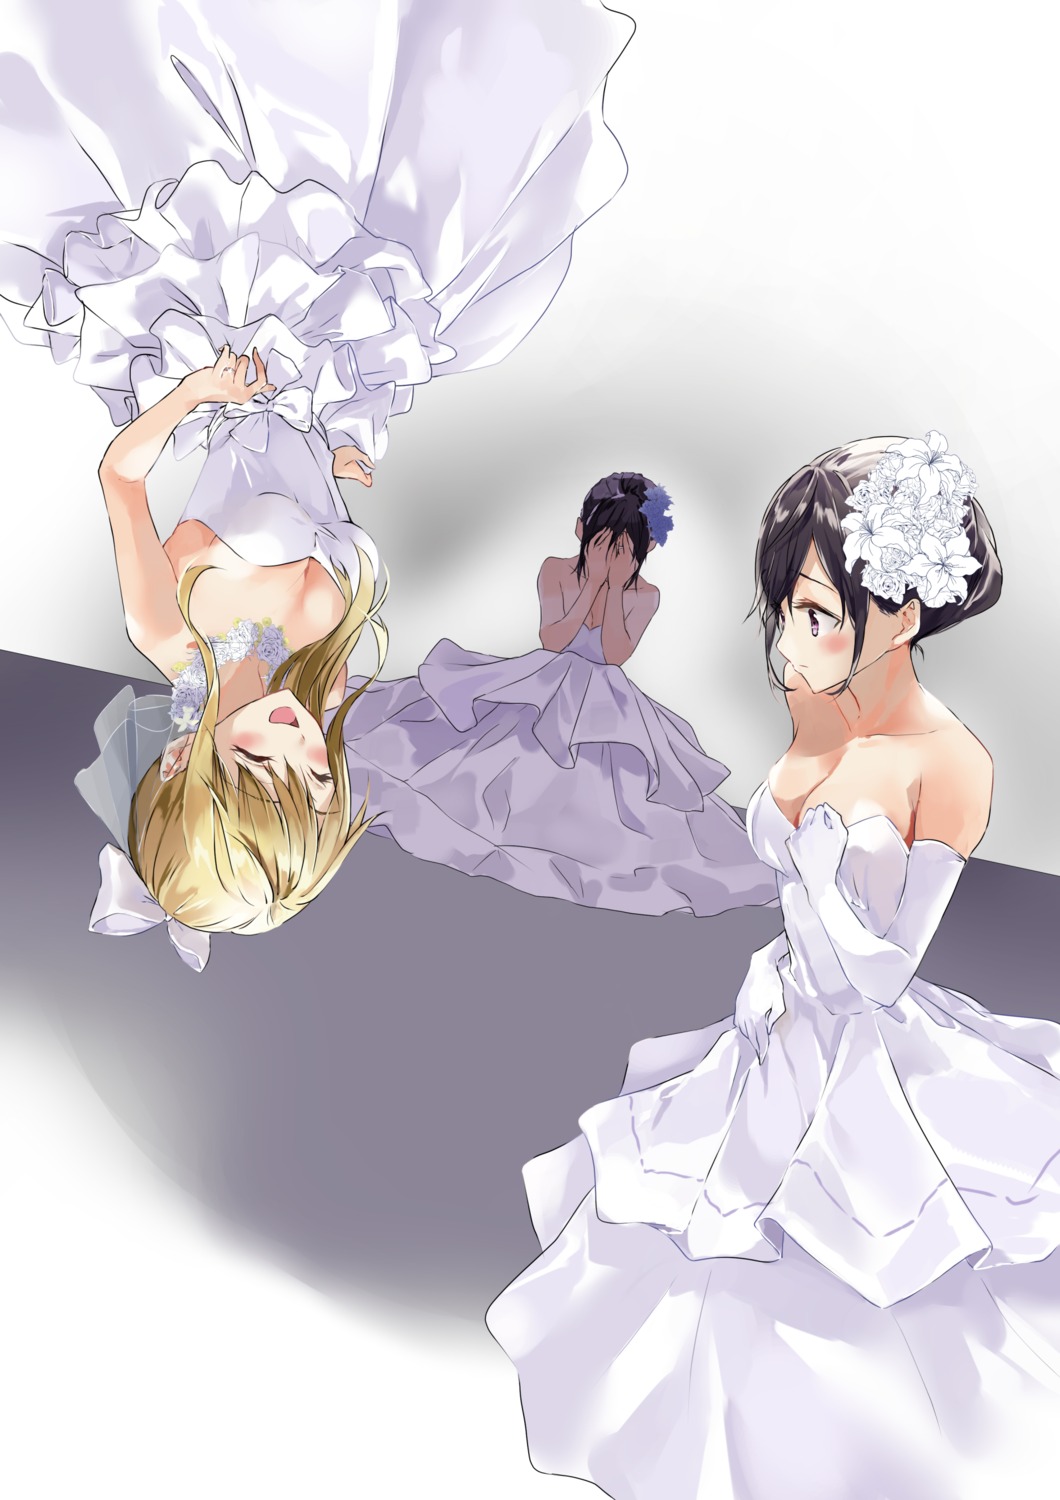 aihara_mei aihara_yuzu_(citrus) citrus_(manga) cleavage dress fujisaki_ribbon wedding_dress yuri